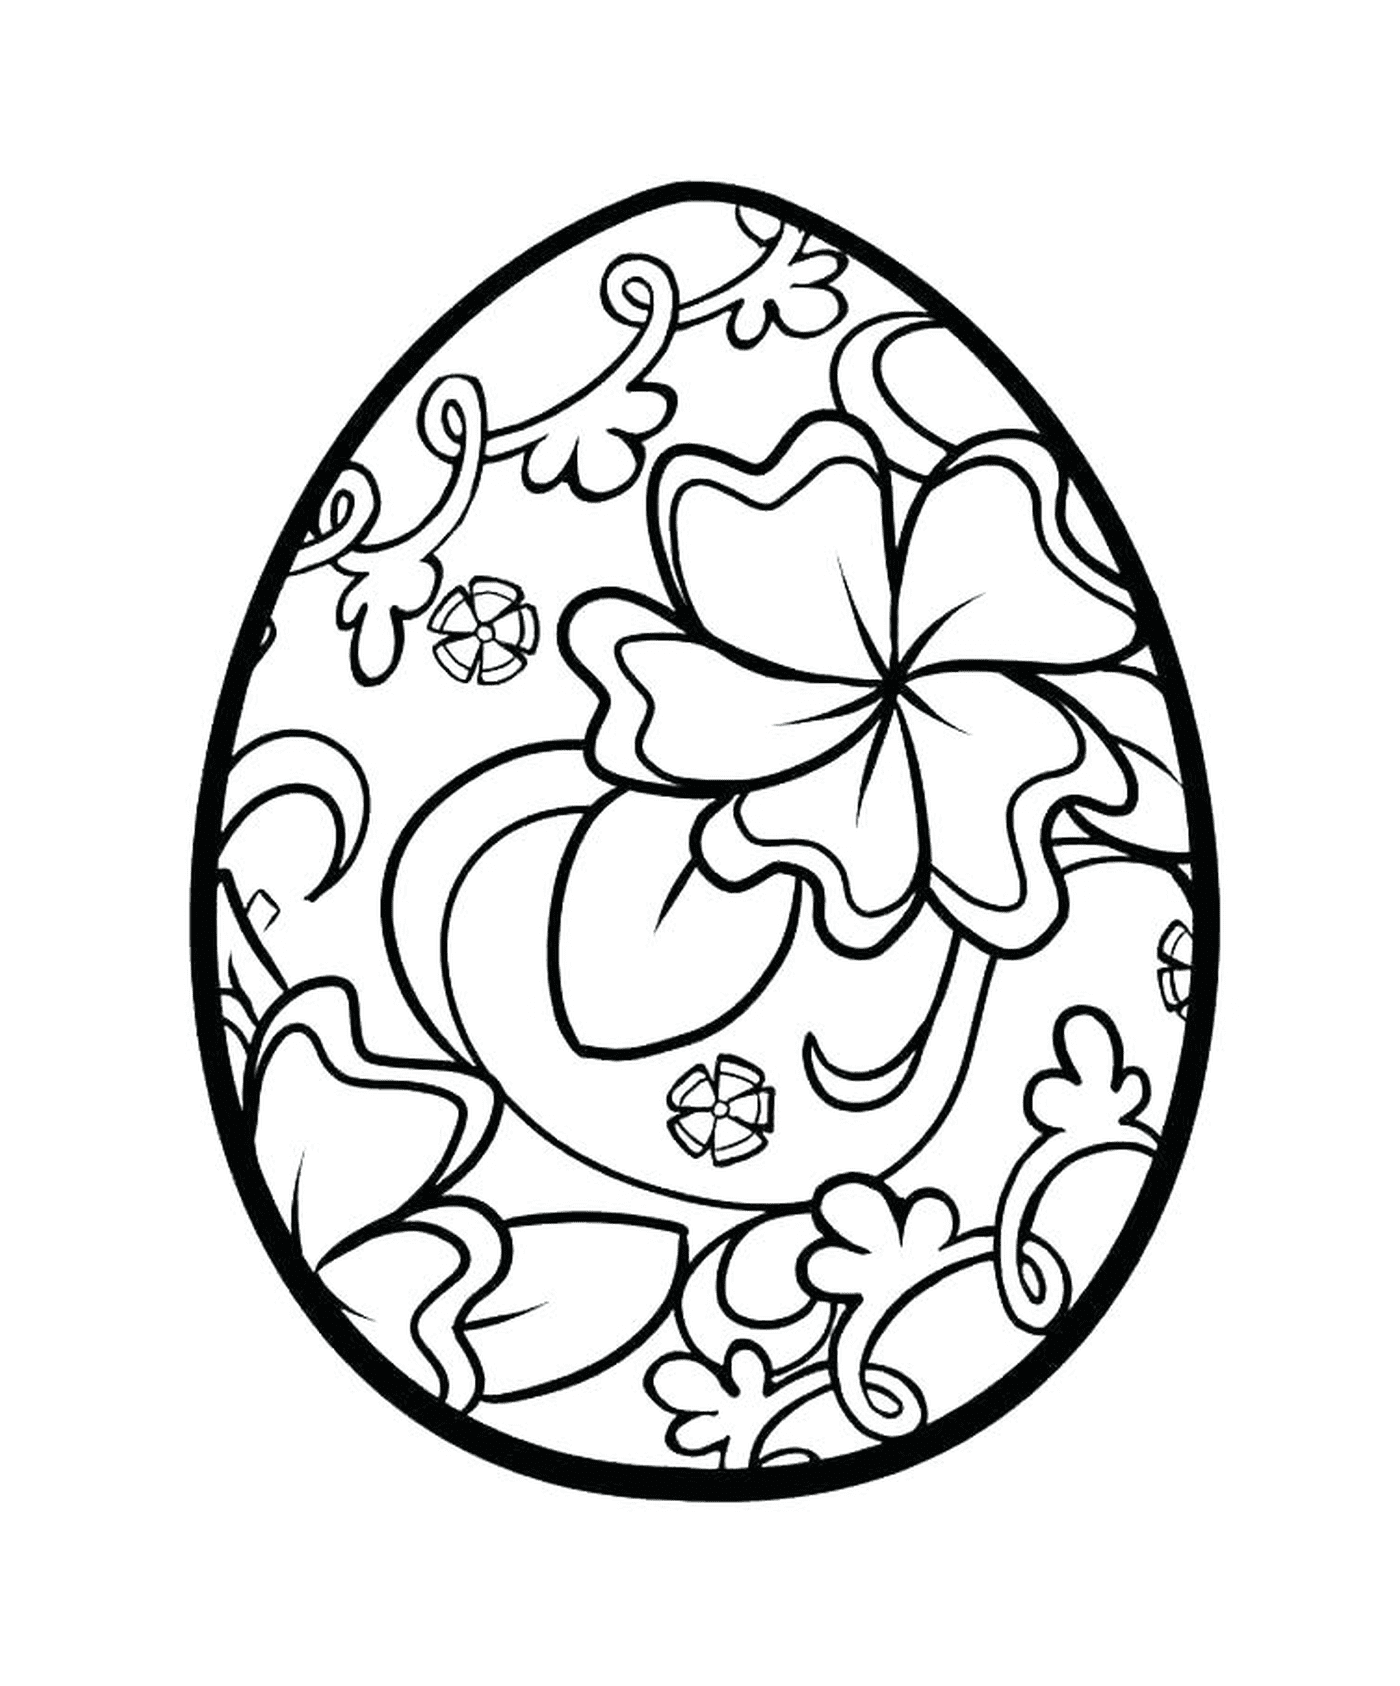   Oeufs de Pâques avec motif de fleurs 